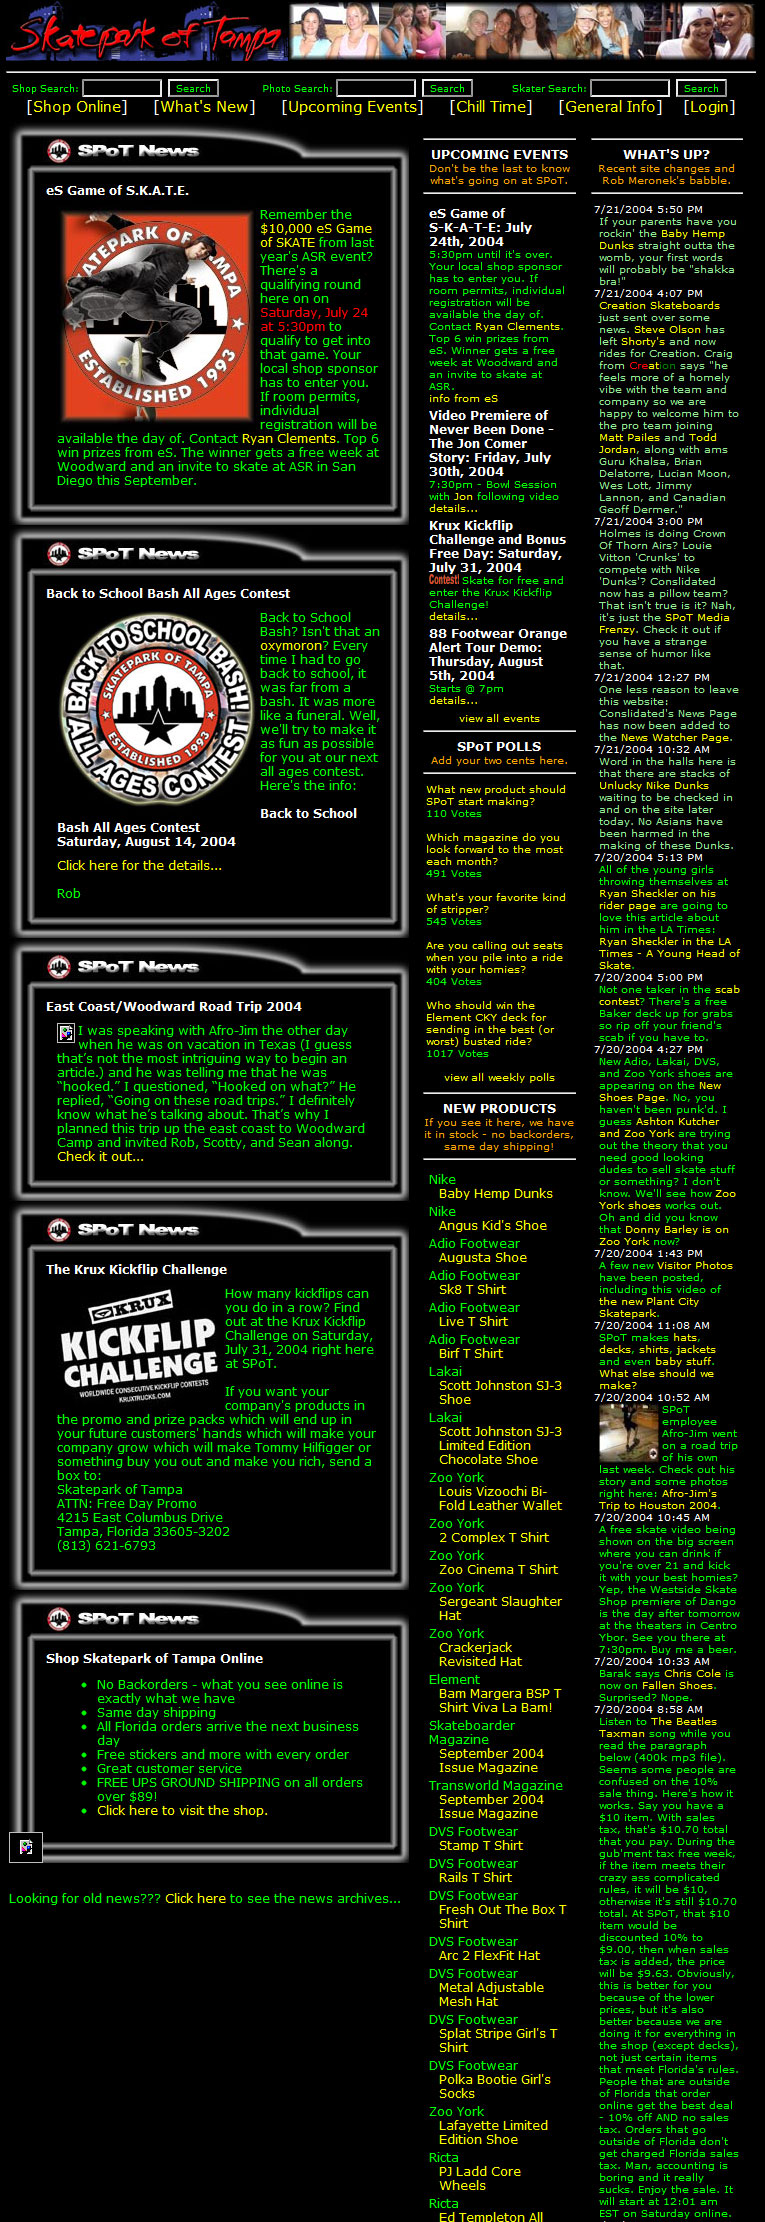 skateparkoftampa.com in 2004